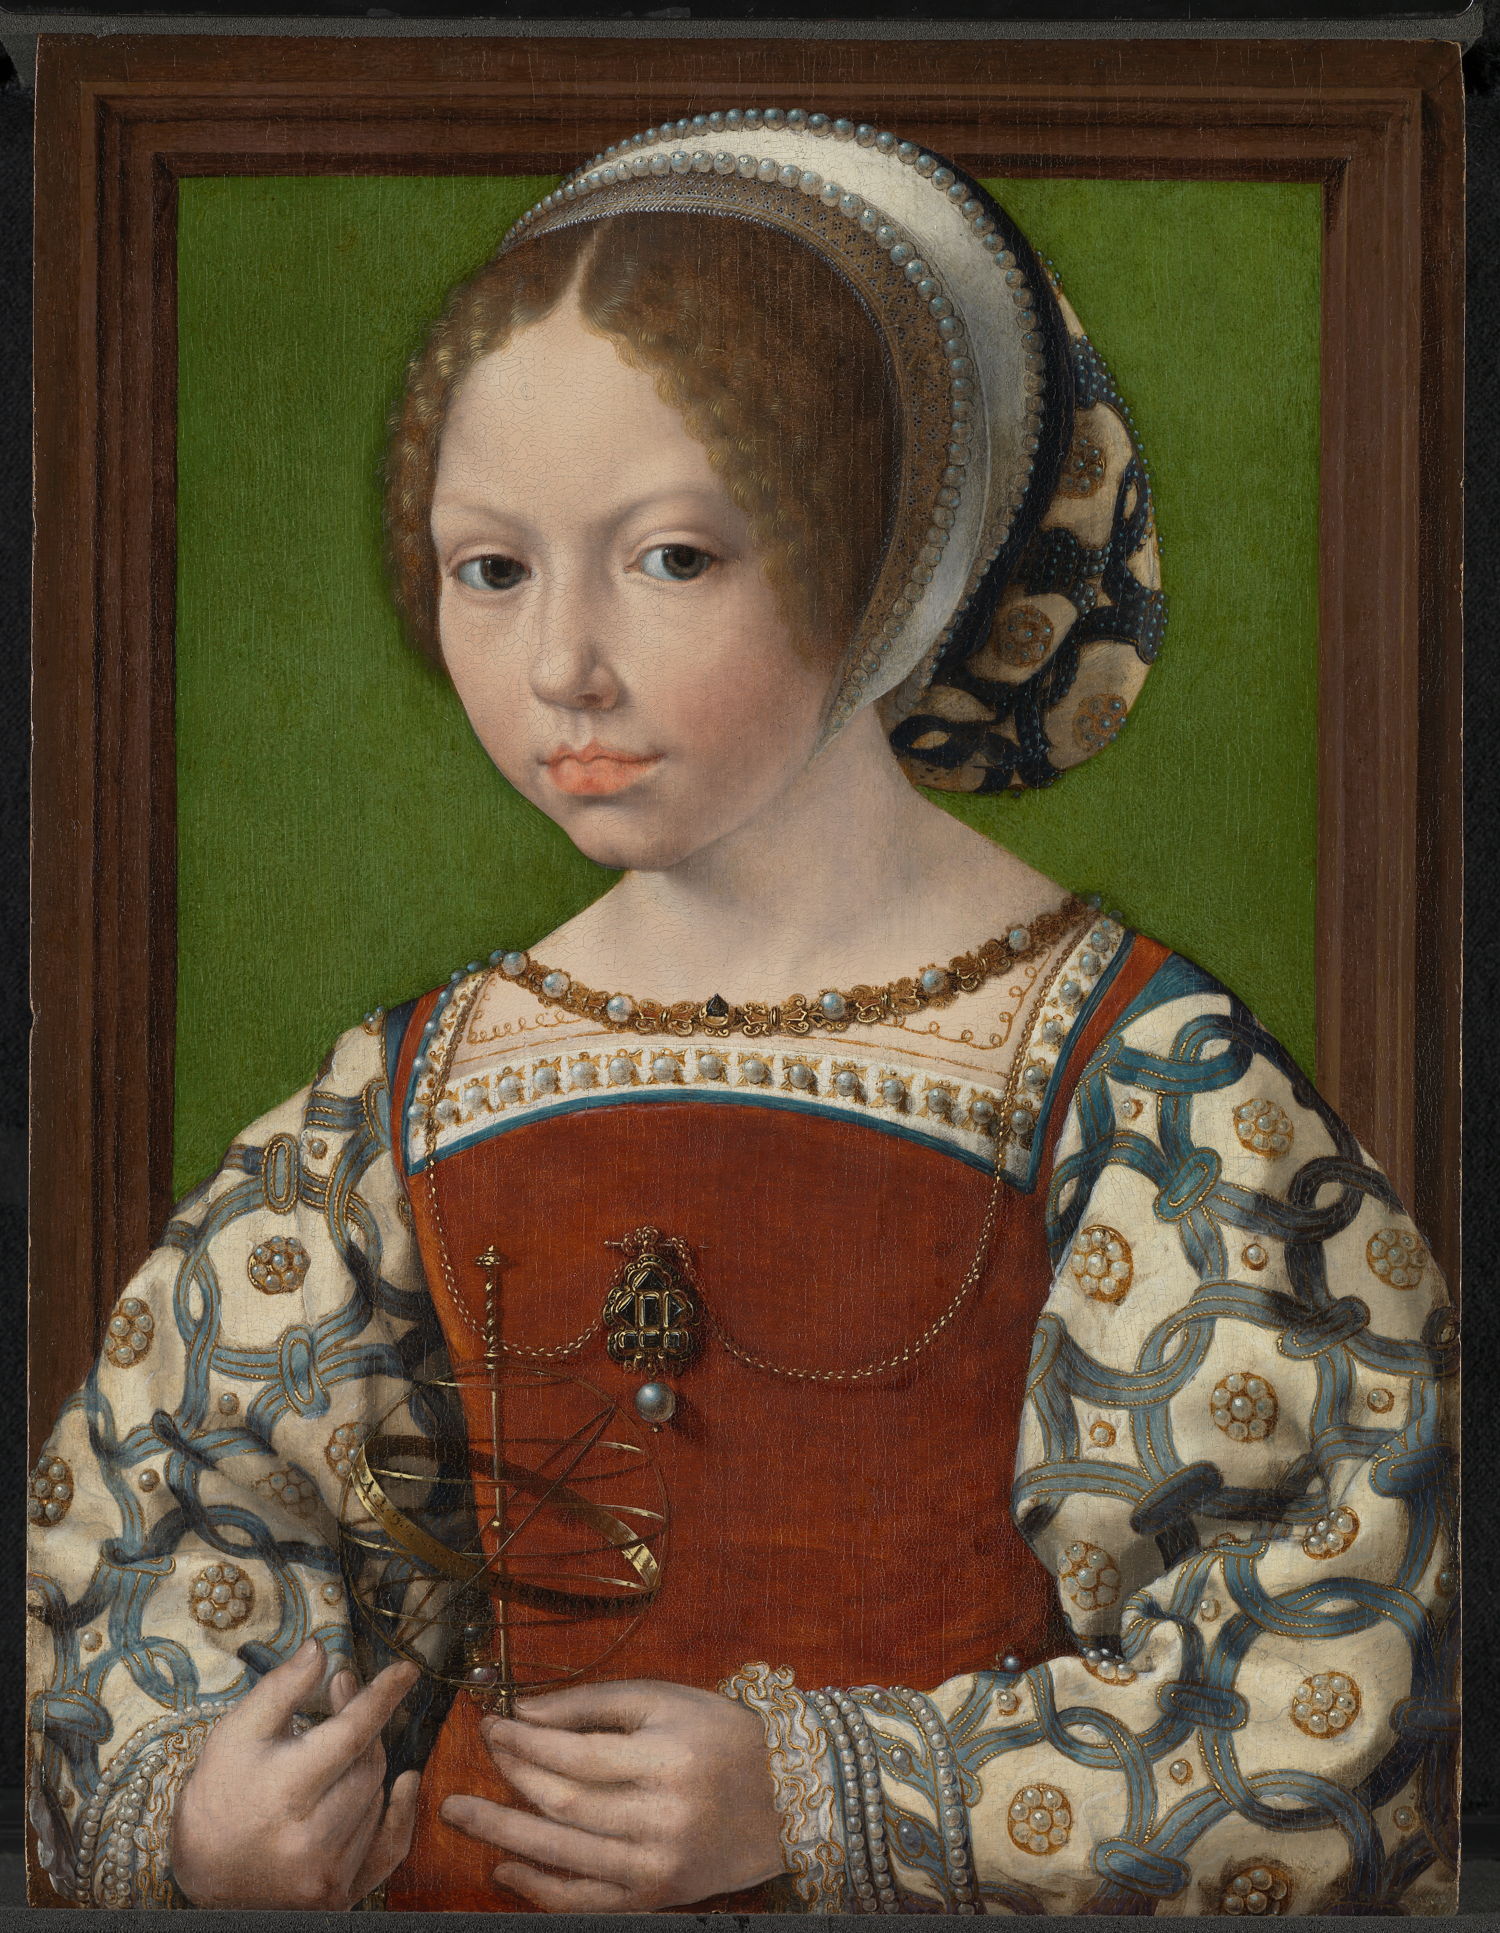 'Op zoek naar Utopia' © Jan Gossaert, Portret van een jonge prinses met armillarium, c. 1530. The National Gallery, Londen